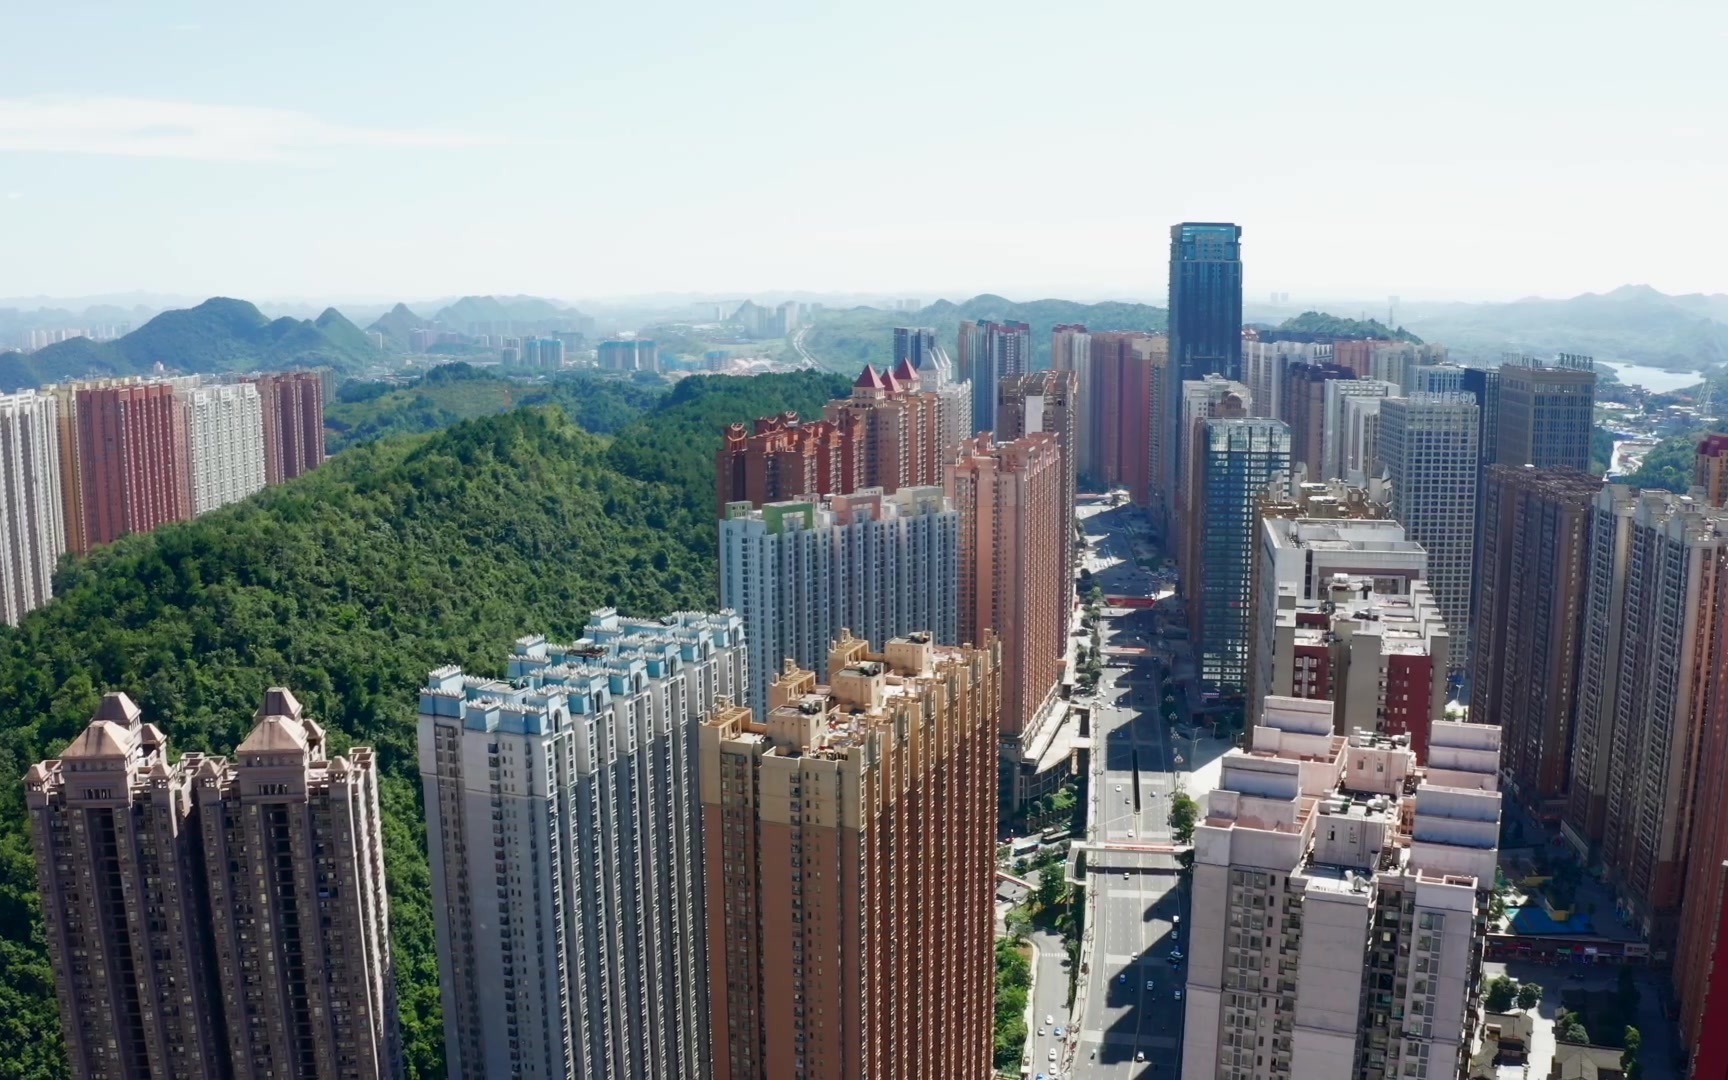 亚洲最大楼盘贵阳花果园,投资千亿密密麻麻的楼房住着几十万人!